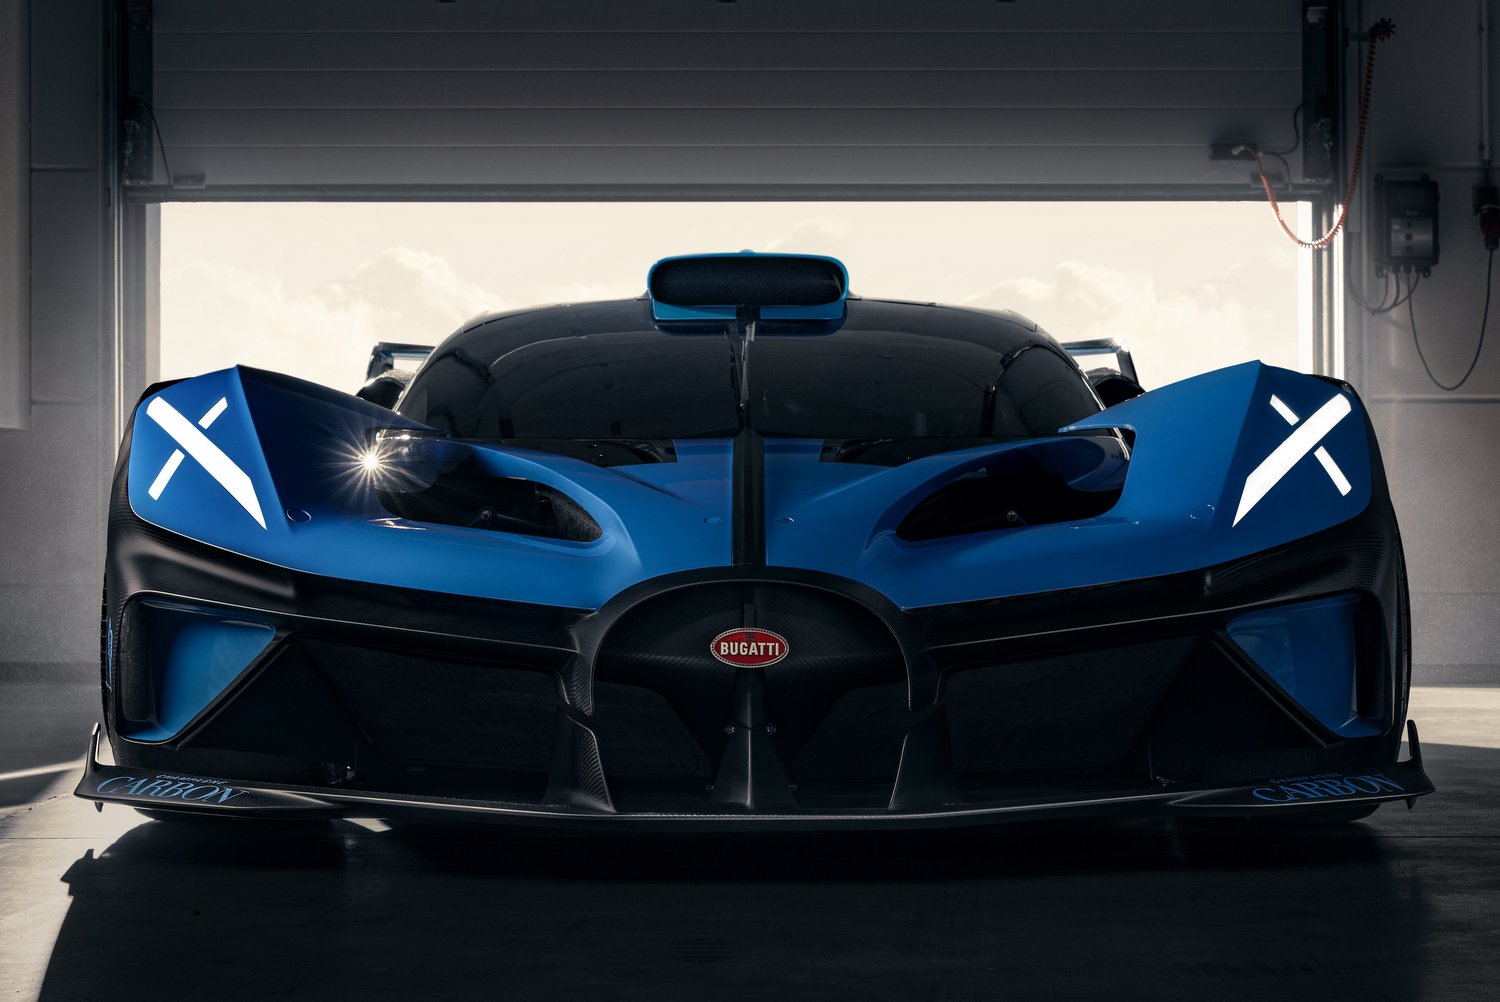 Libabőrös burkolat teszi áramvonalasabbá a Bugatti versenyautóját 23